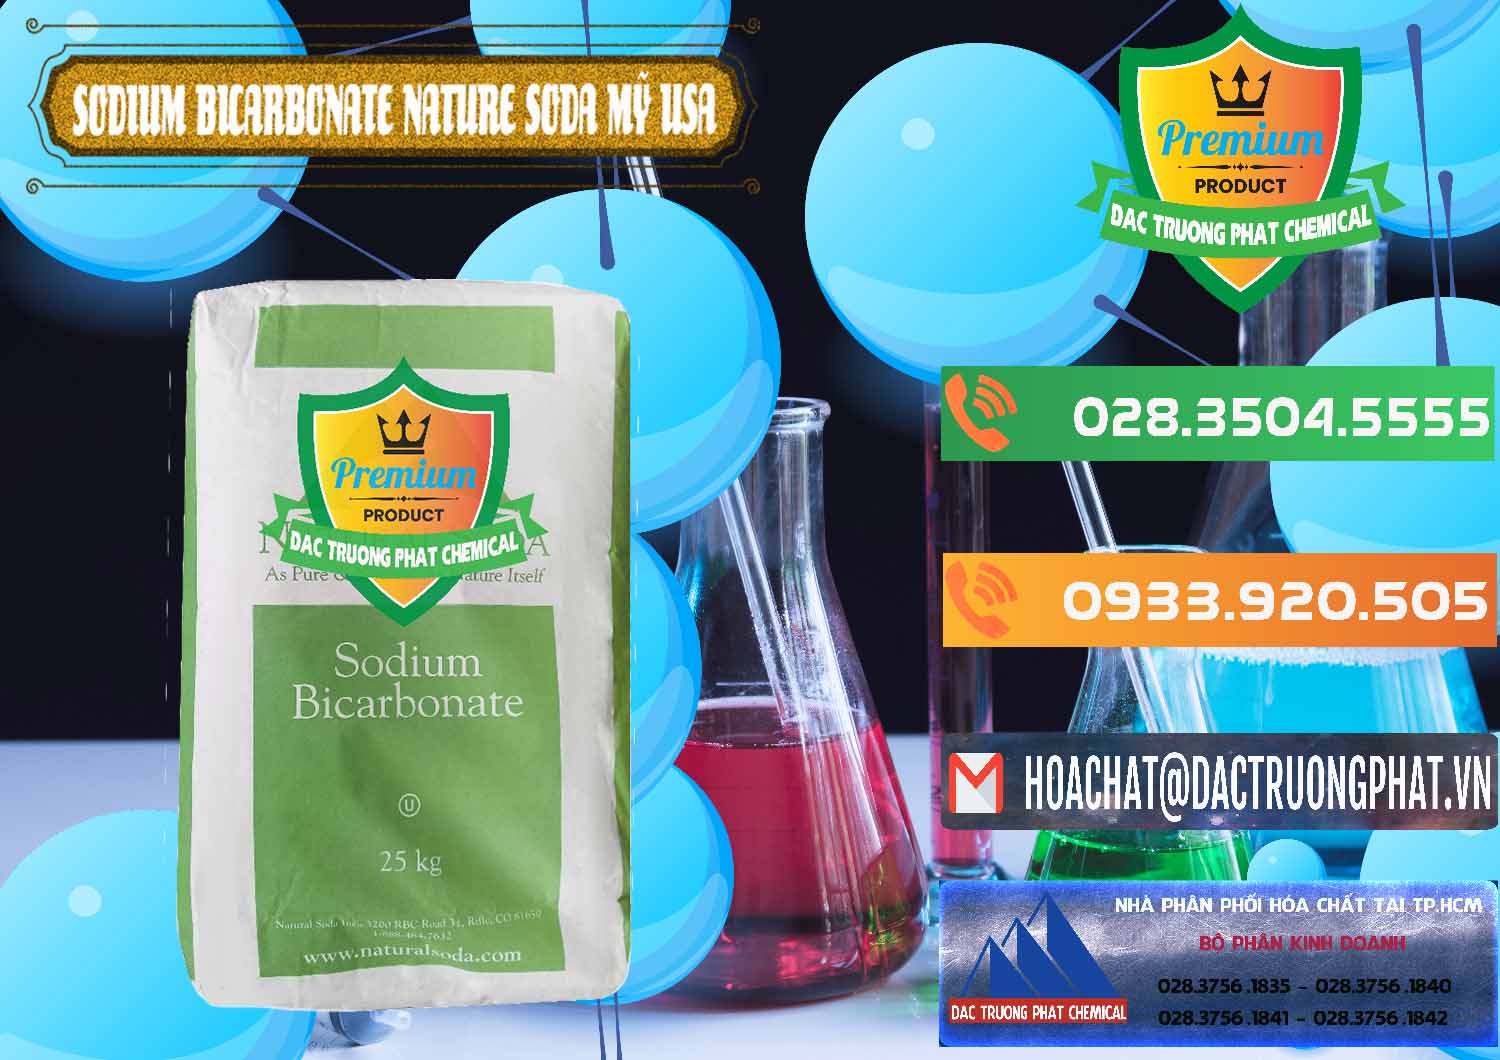 Cty chuyên bán & cung cấp Sodium Bicarbonate – Bicar NaHCO3 Food Grade Nature Soda Mỹ USA - 0256 - Nơi nhập khẩu và cung cấp hóa chất tại TP.HCM - hoachatxulynuoc.com.vn